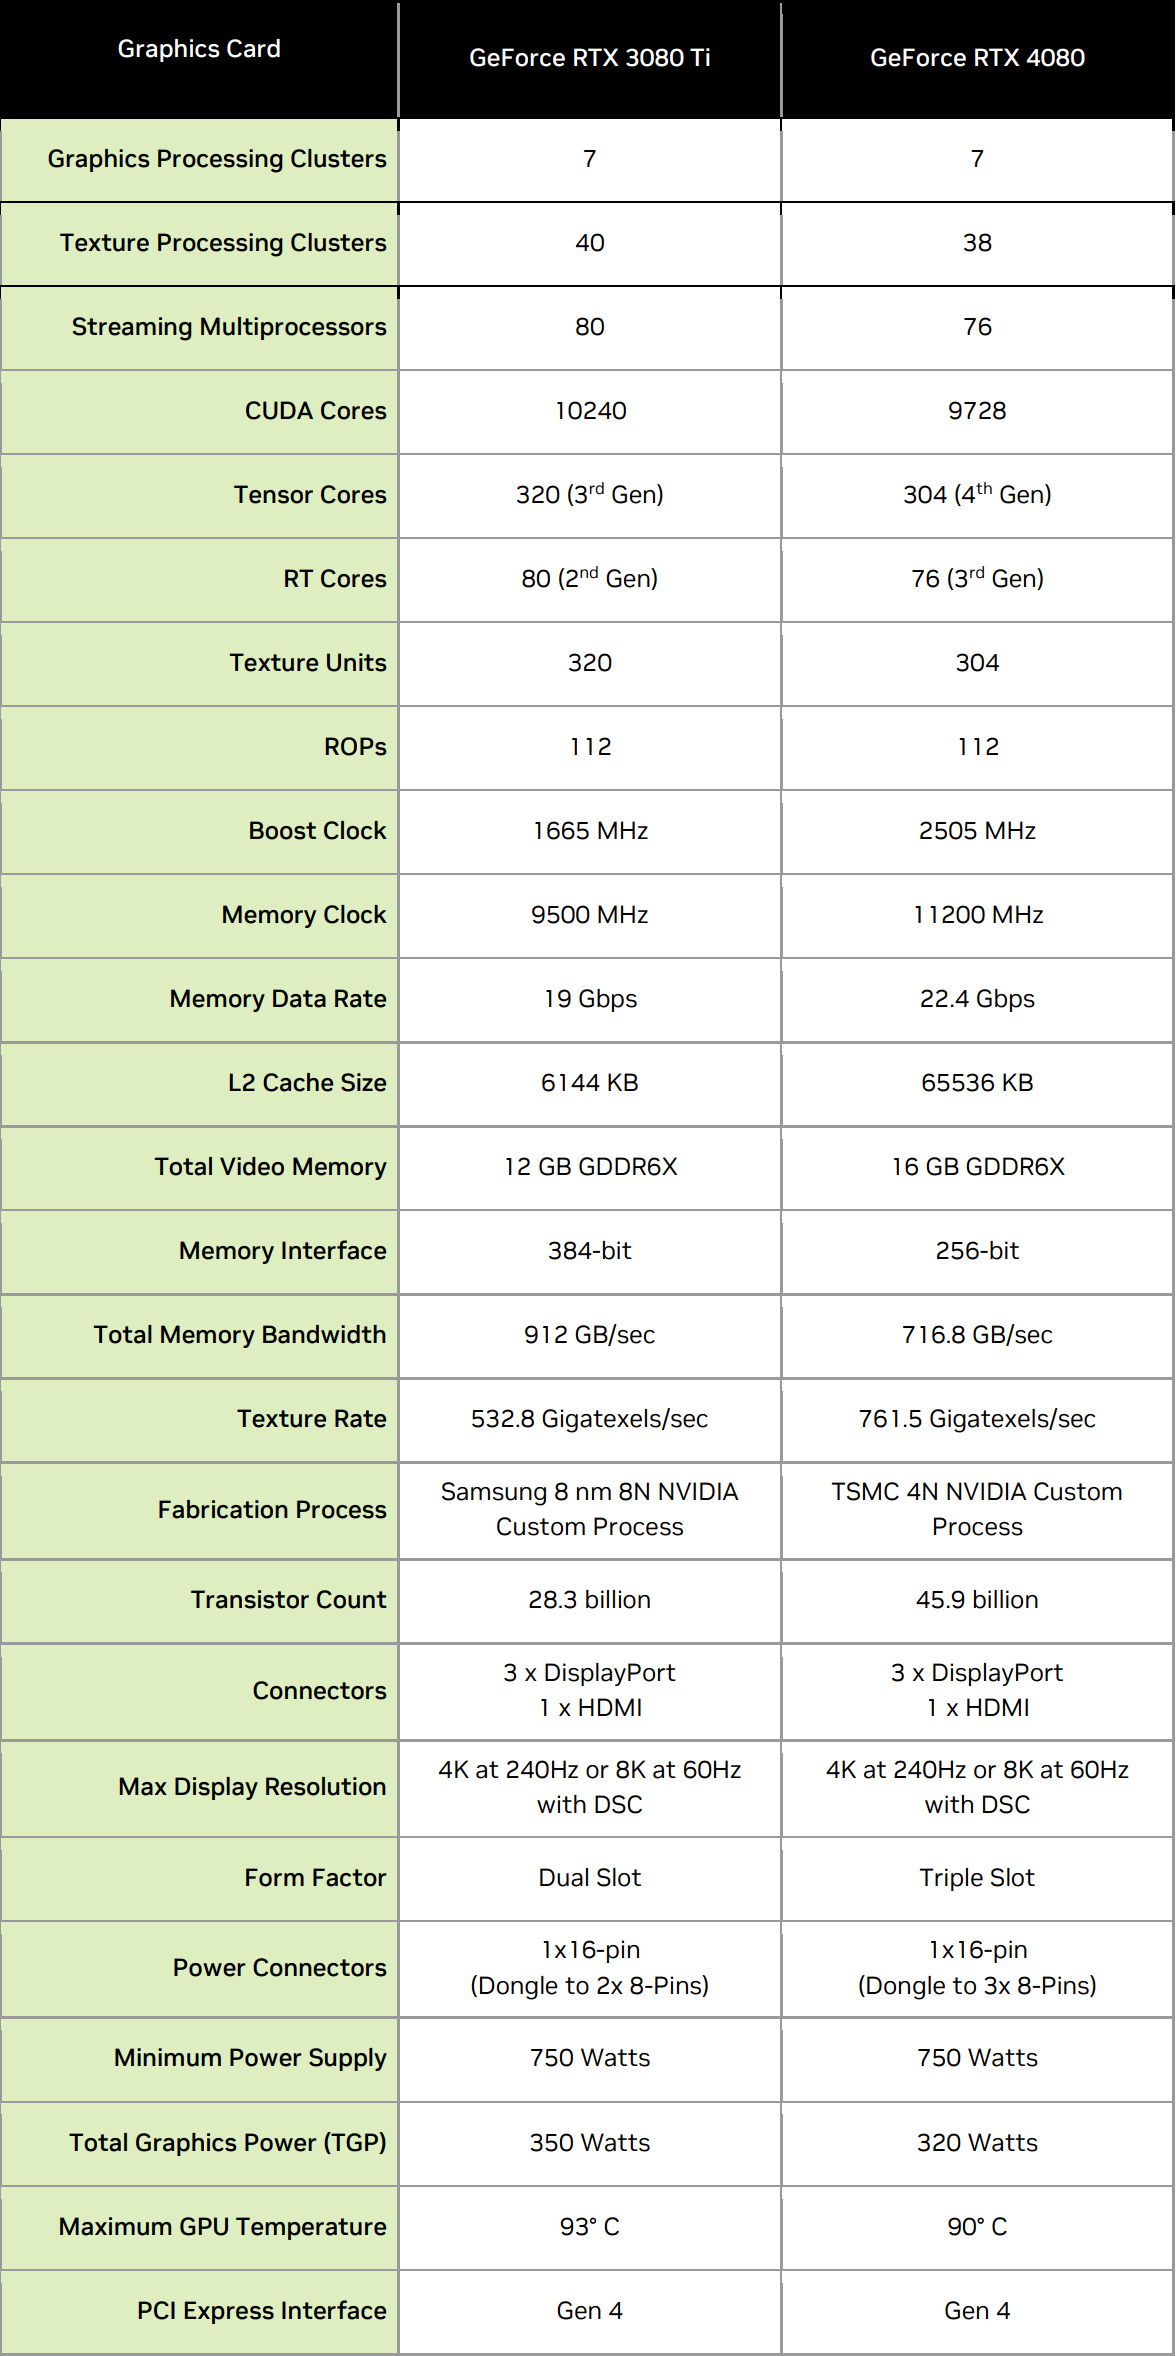 Fiches techniques comparées des RTX 3080 Ti et RTX 4080 © NVIDIA